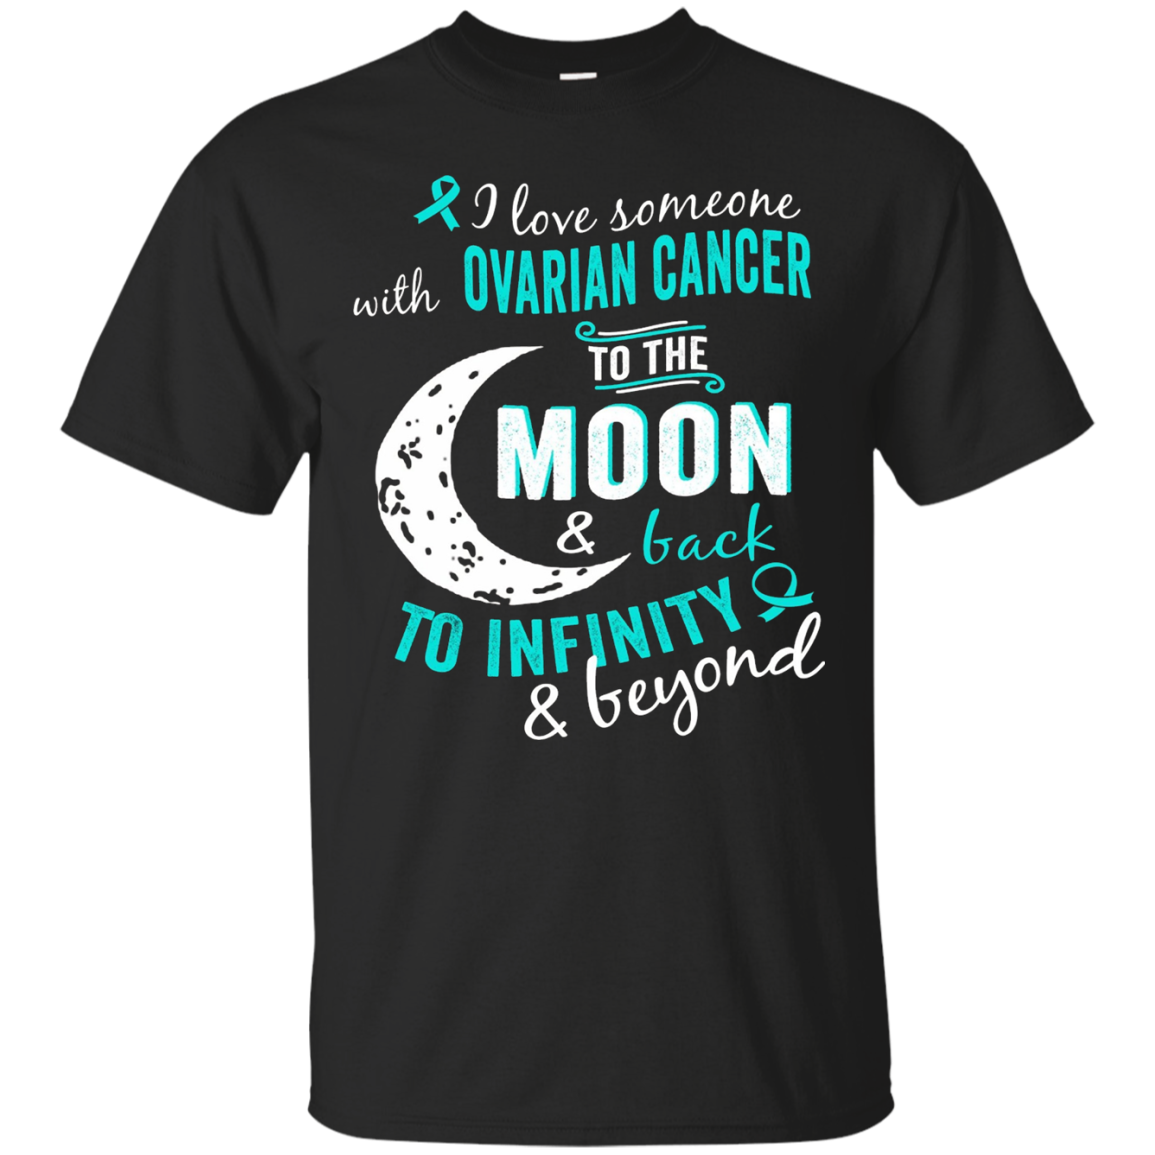 Ovarian Cancer Awareness Shirt For Women Girl